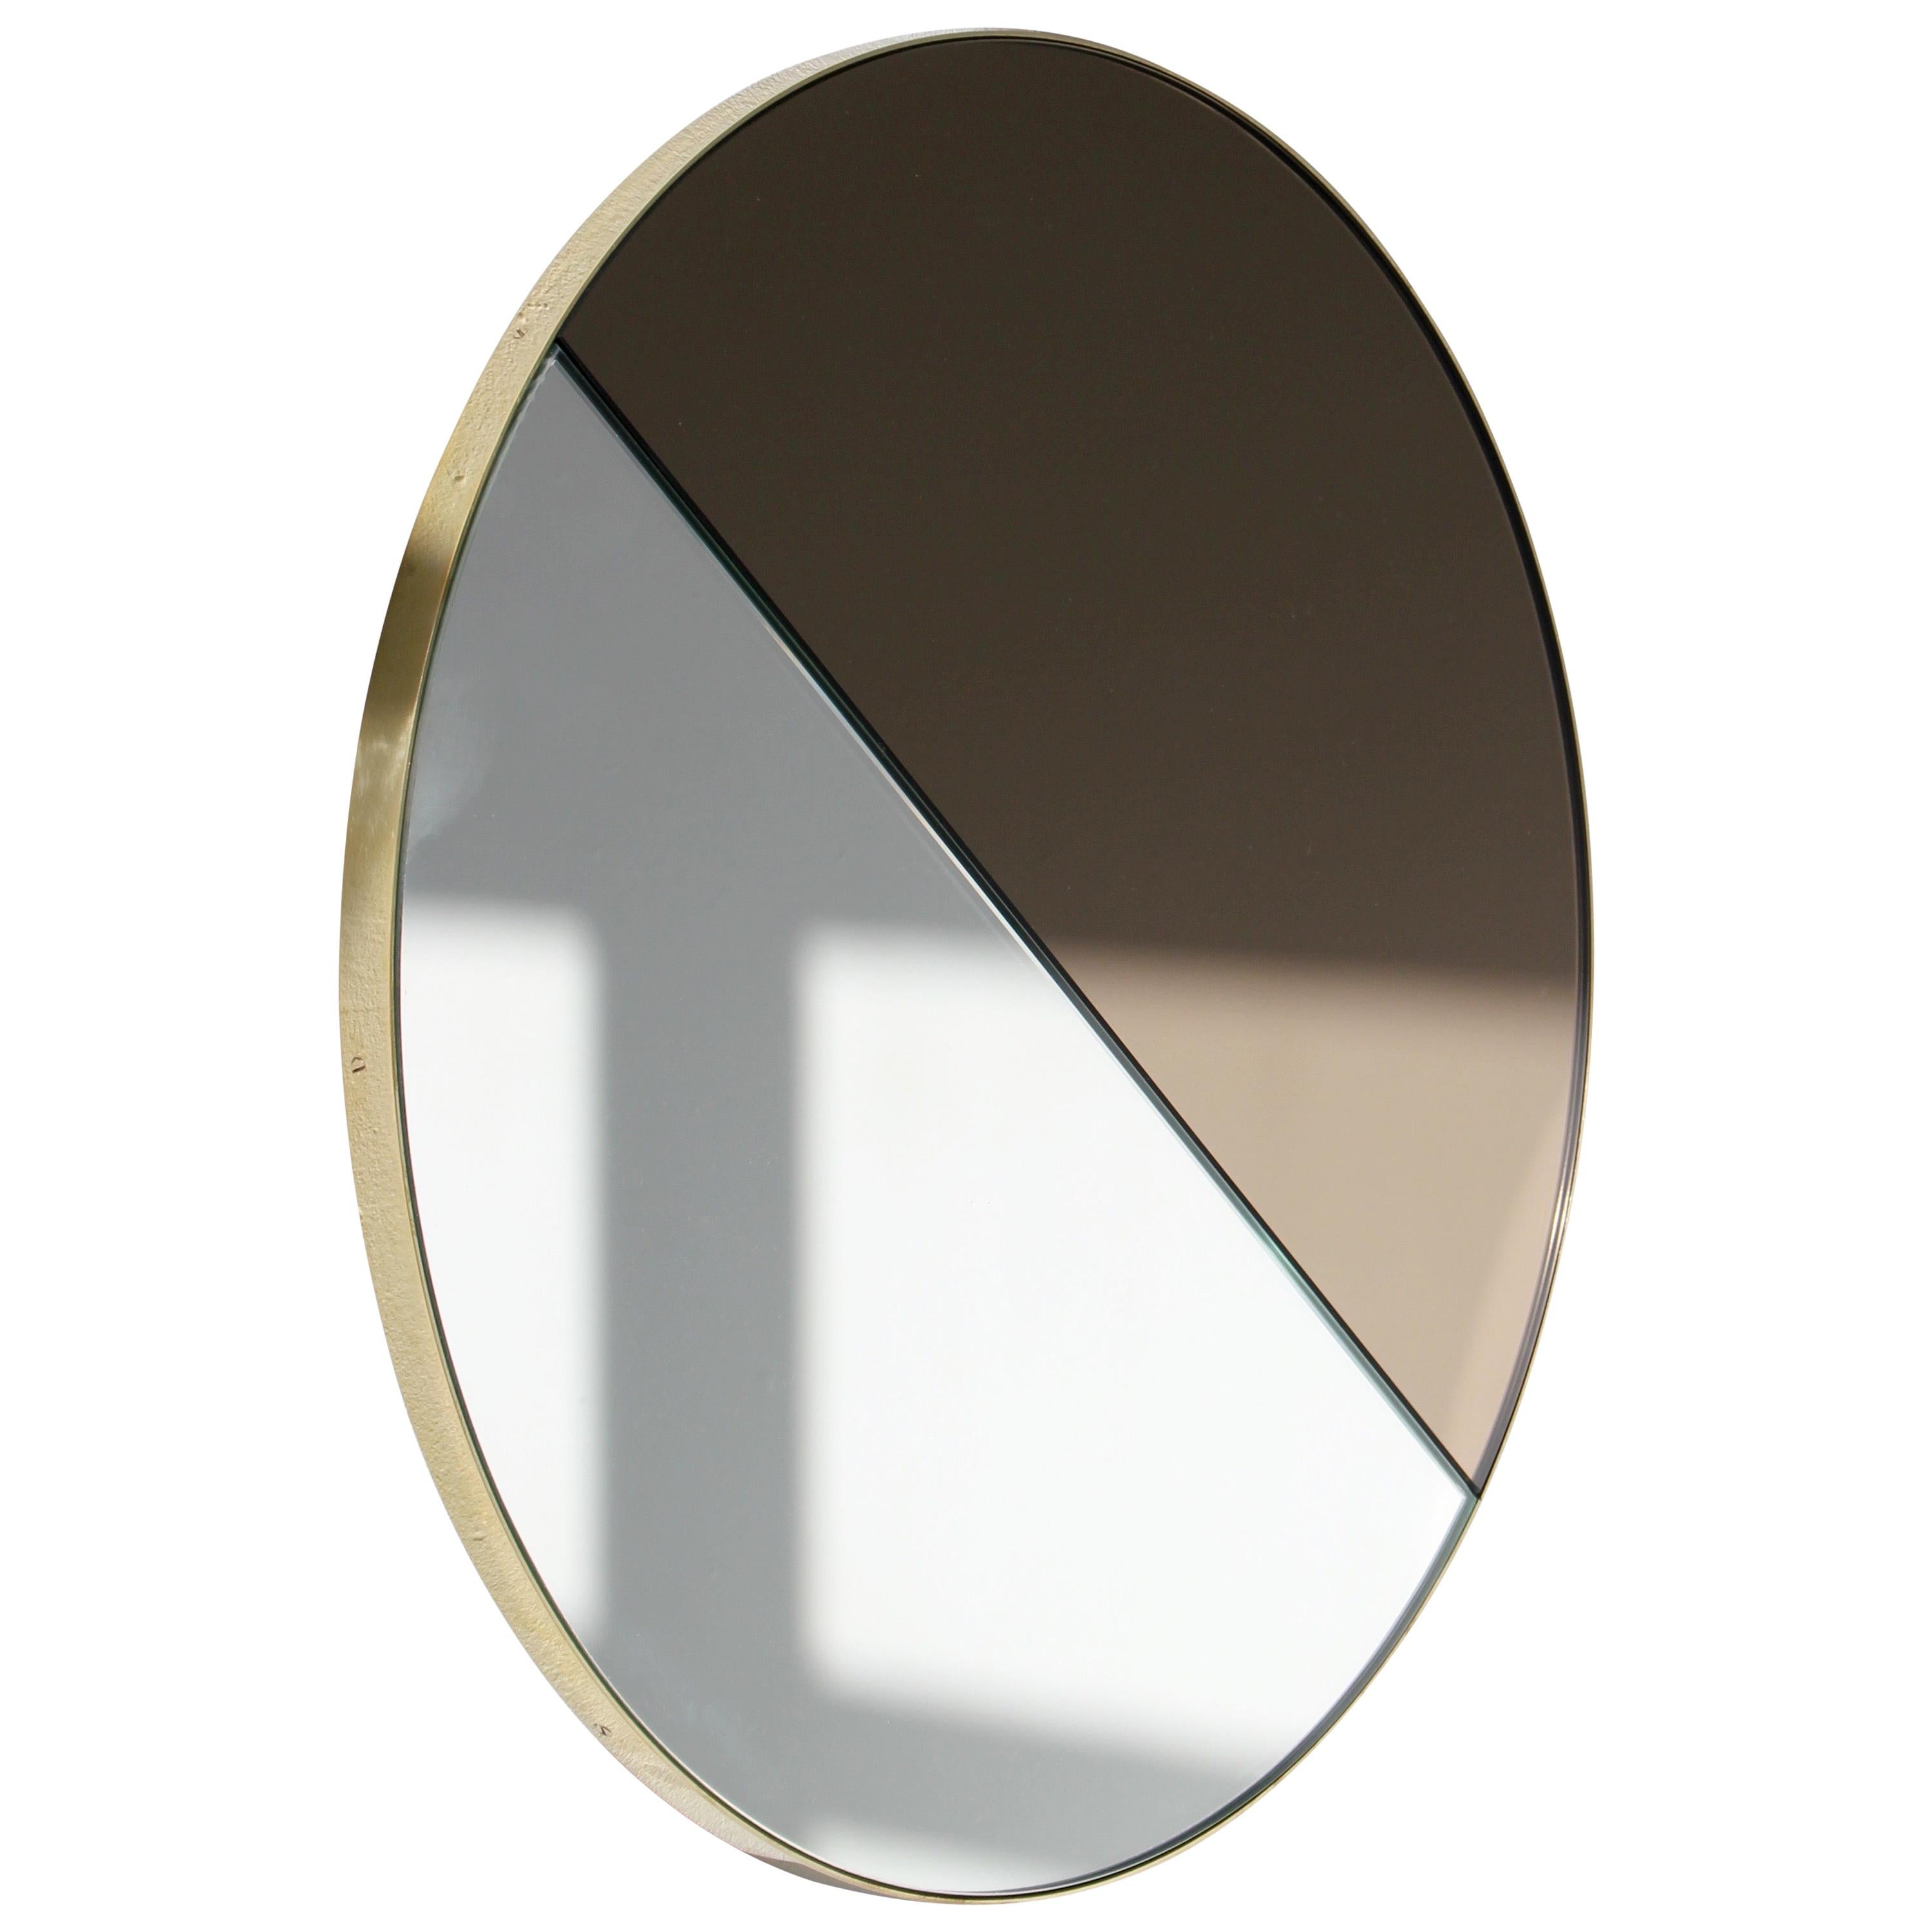 Orbis Dualis Mixed Silver + Bronze Round Mirror with Brass Frame, Medium